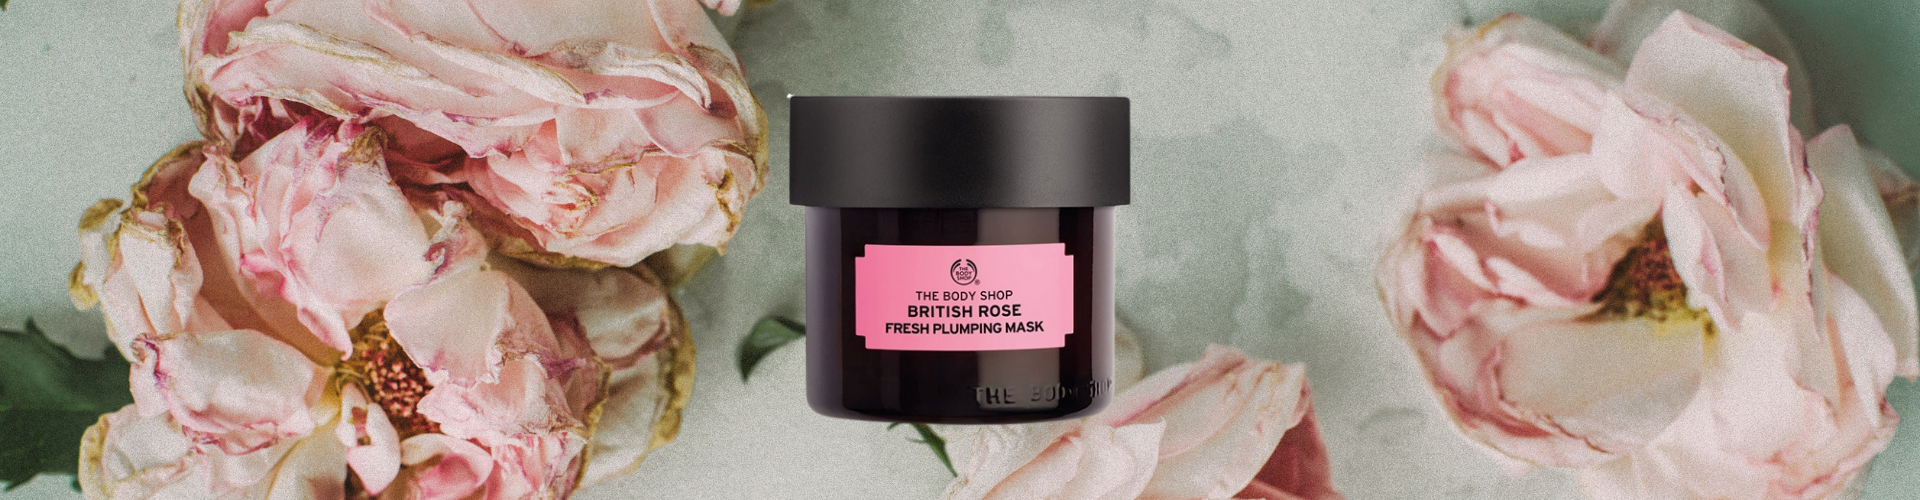 Svinde bort Afstem gispende Body Shop British Rose Face Mask Review | Middle Age Beauty